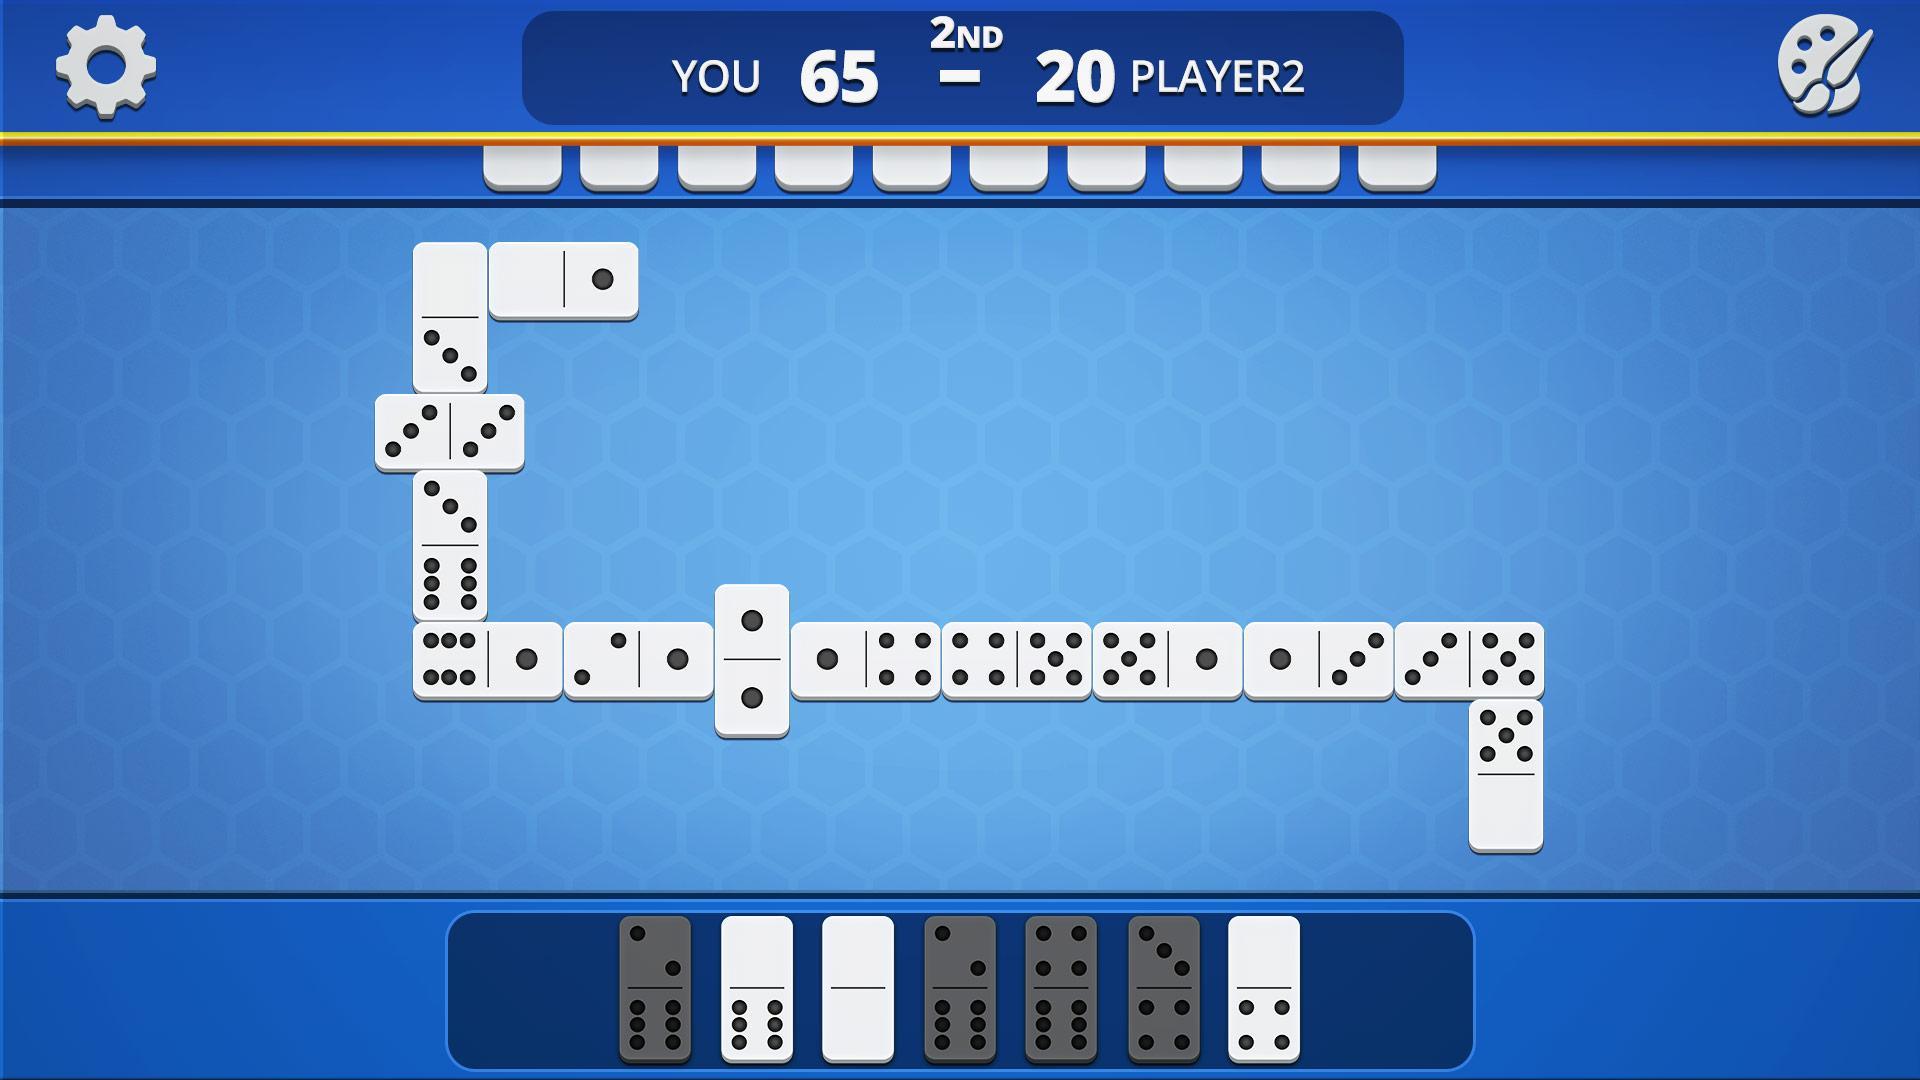 Dominoes Classic Domino Tile Based Game 1.2.5 Screenshot 7